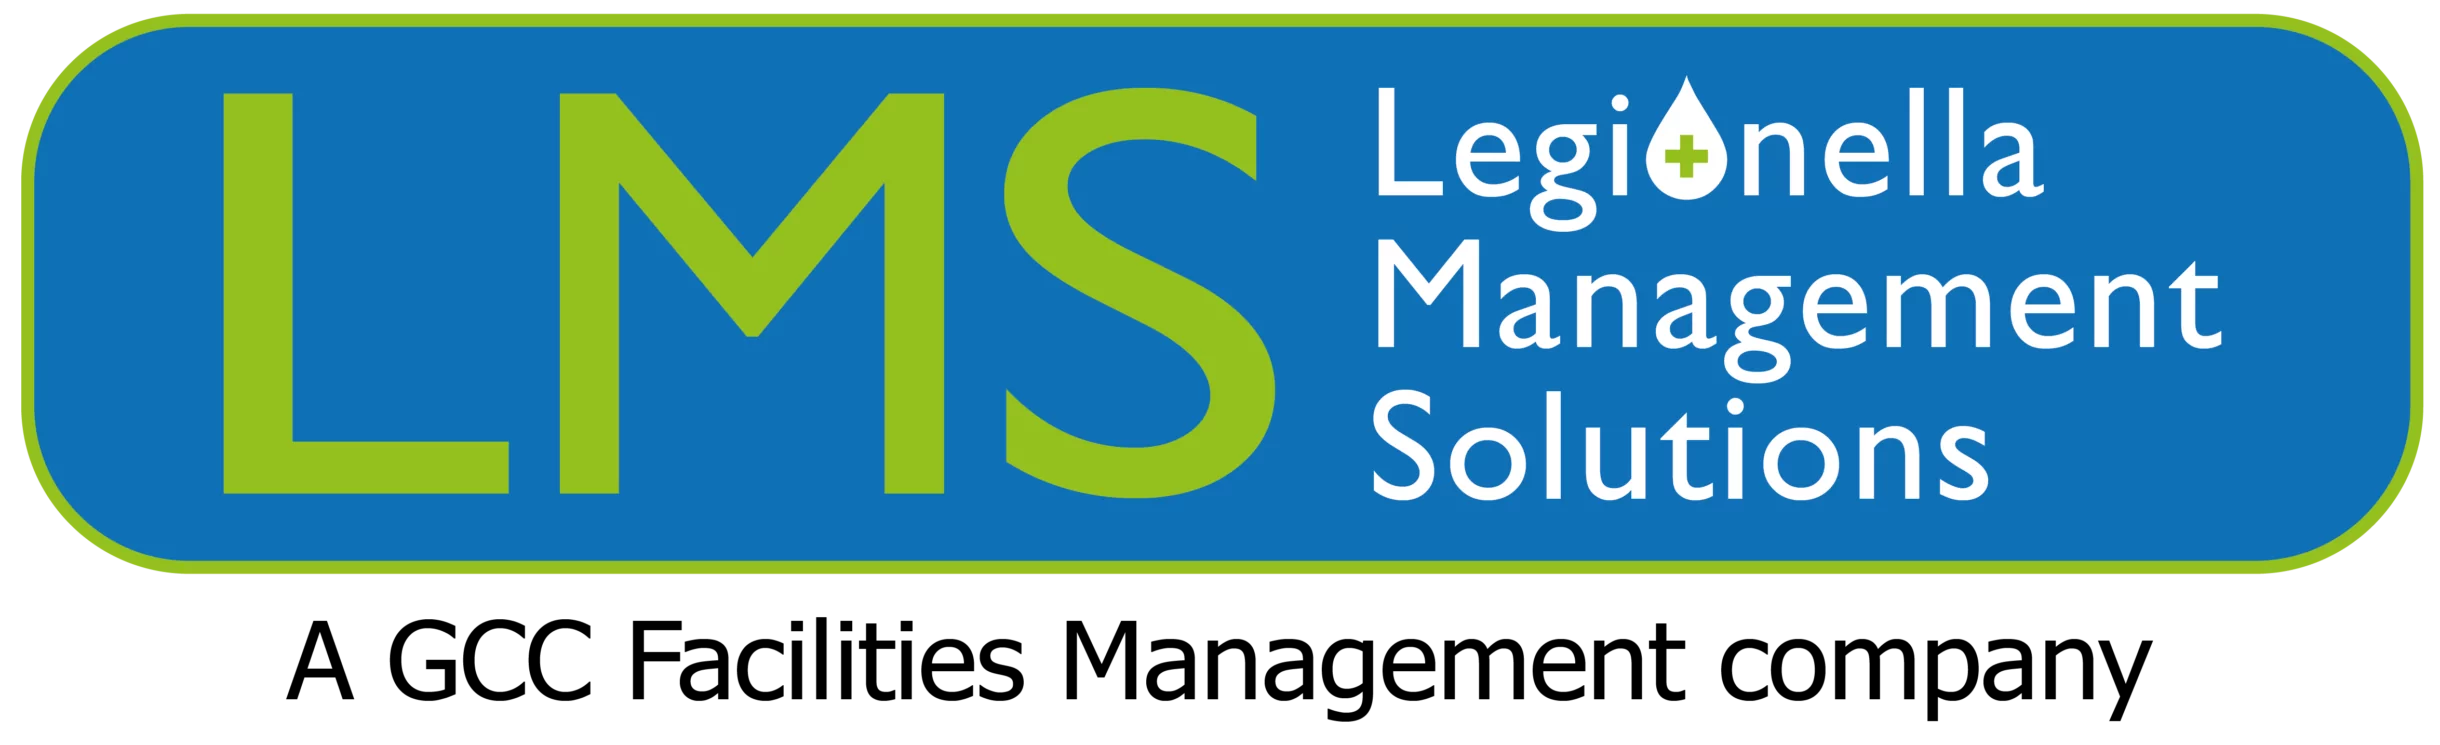 Legionella Management Solutions Logo